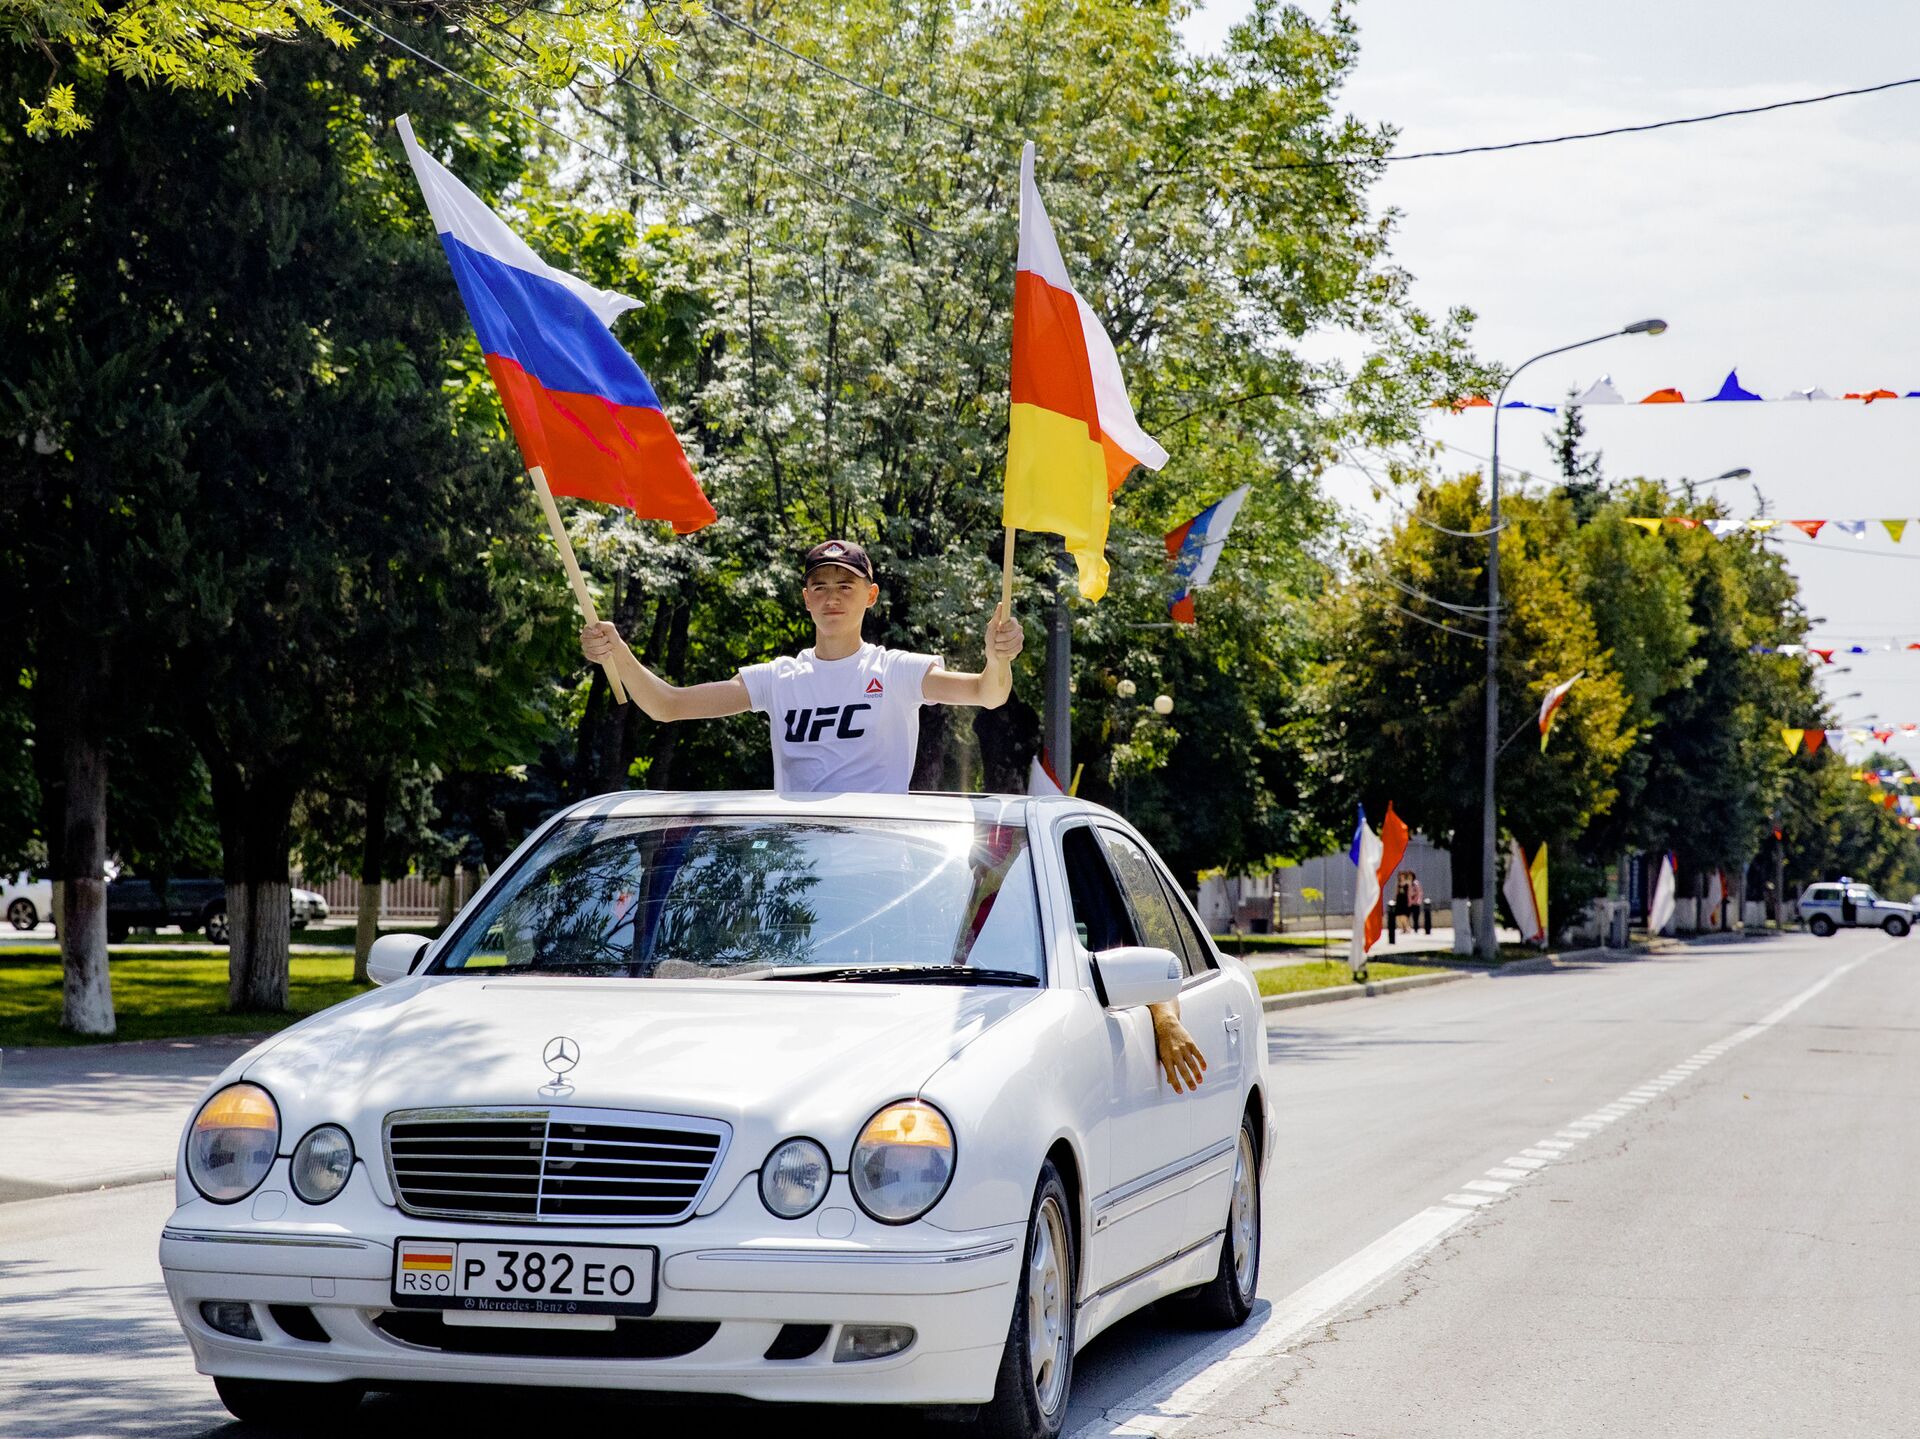 Южная осетия хочет. 26 Августа 2008 независимость Южной Осетии. Признание независимости Южной Осетии. День независимости Южной Осетии. 26 Августа день признания независимости Южной Осетии.